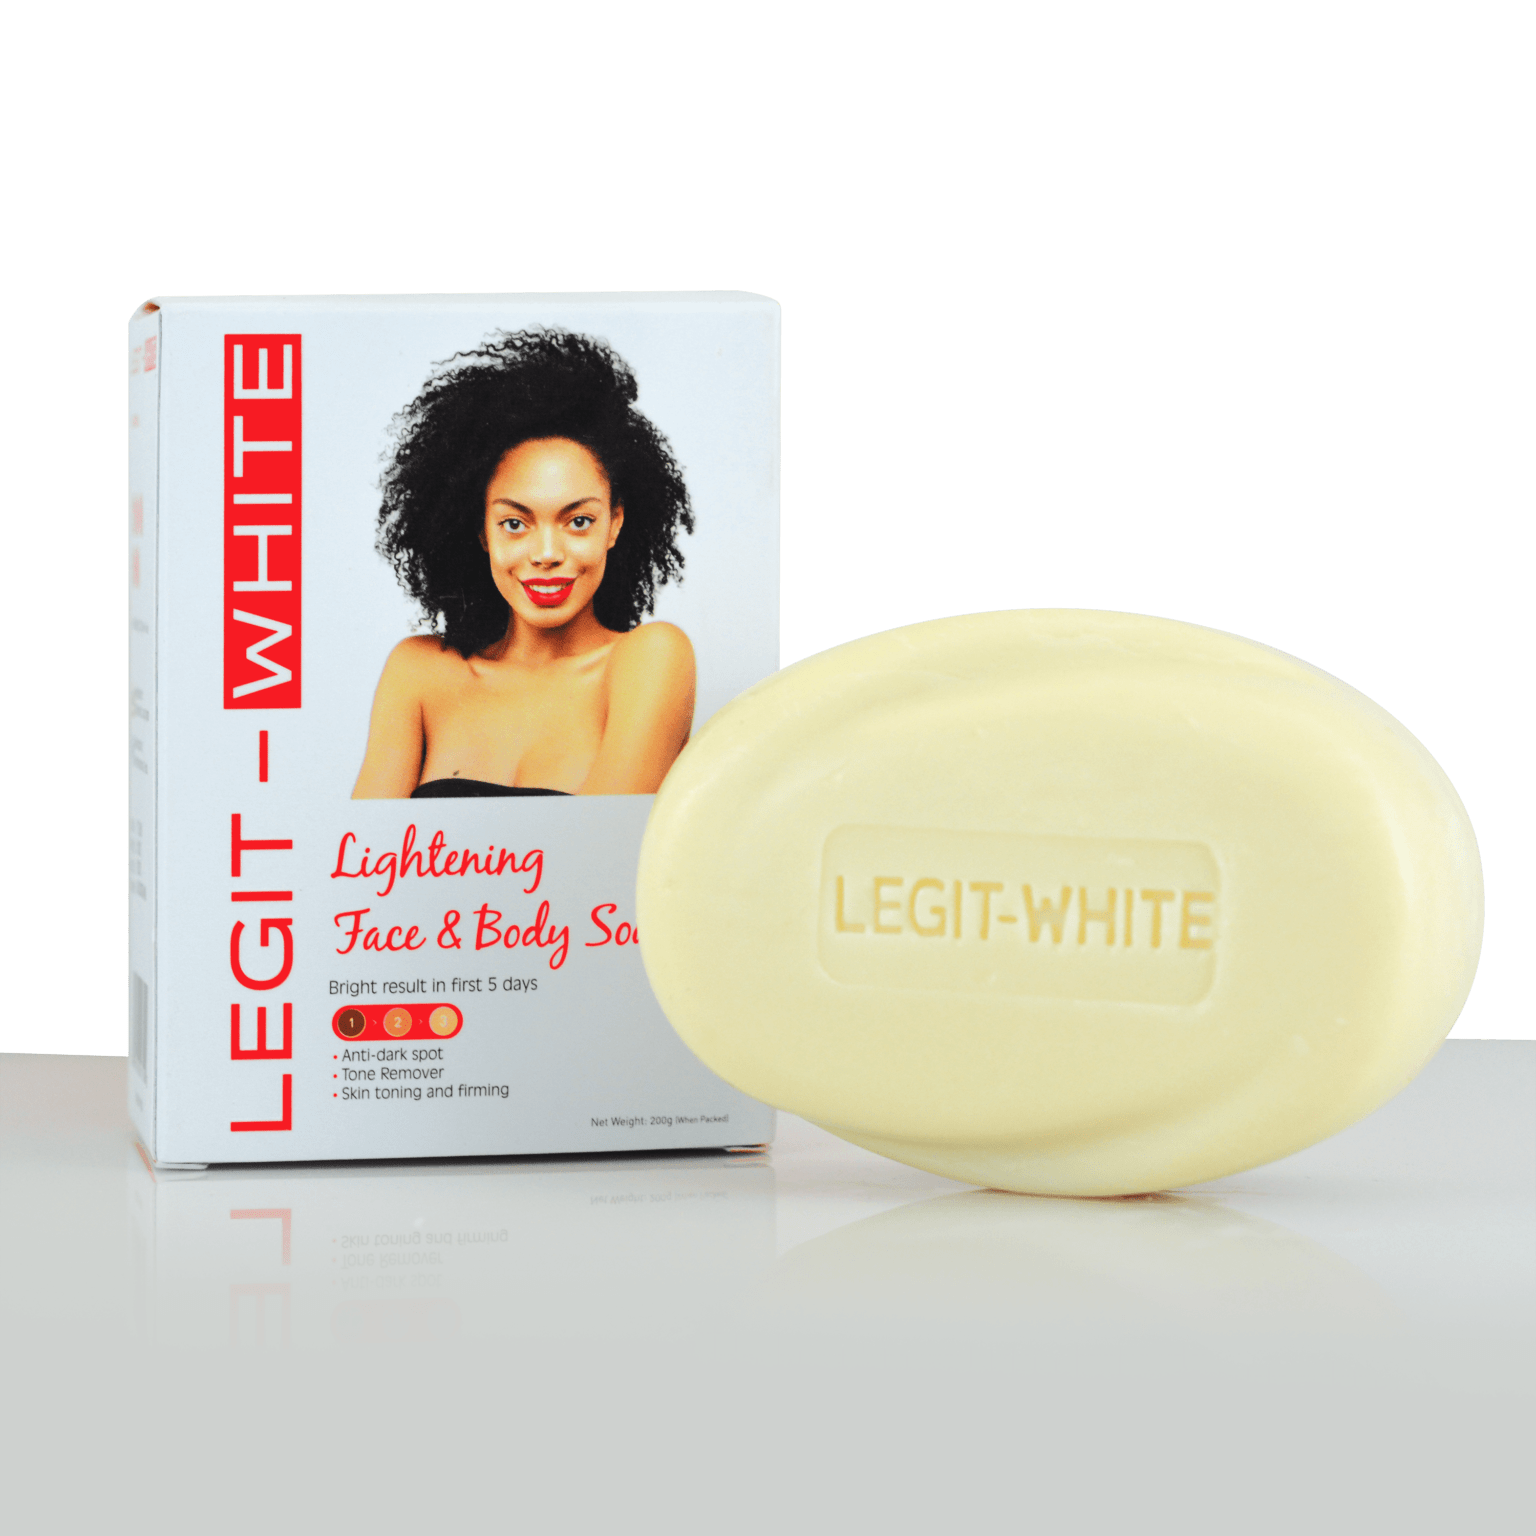 Legit – White Soap